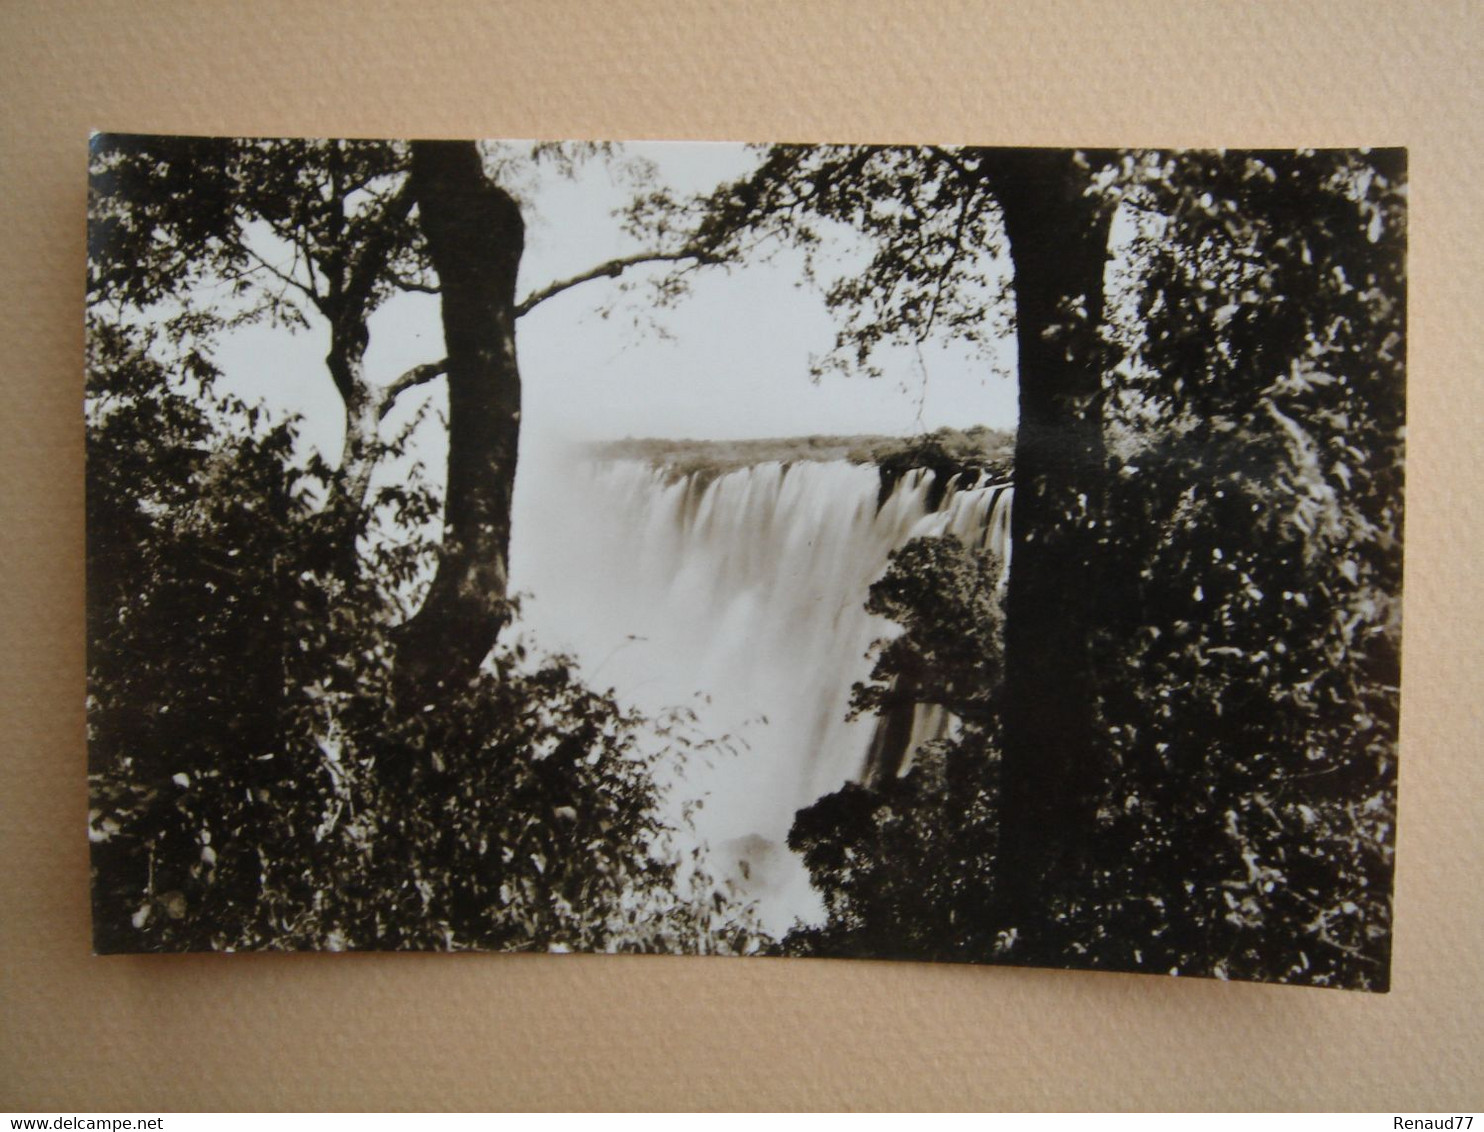 The Victoria Falls - Zambia